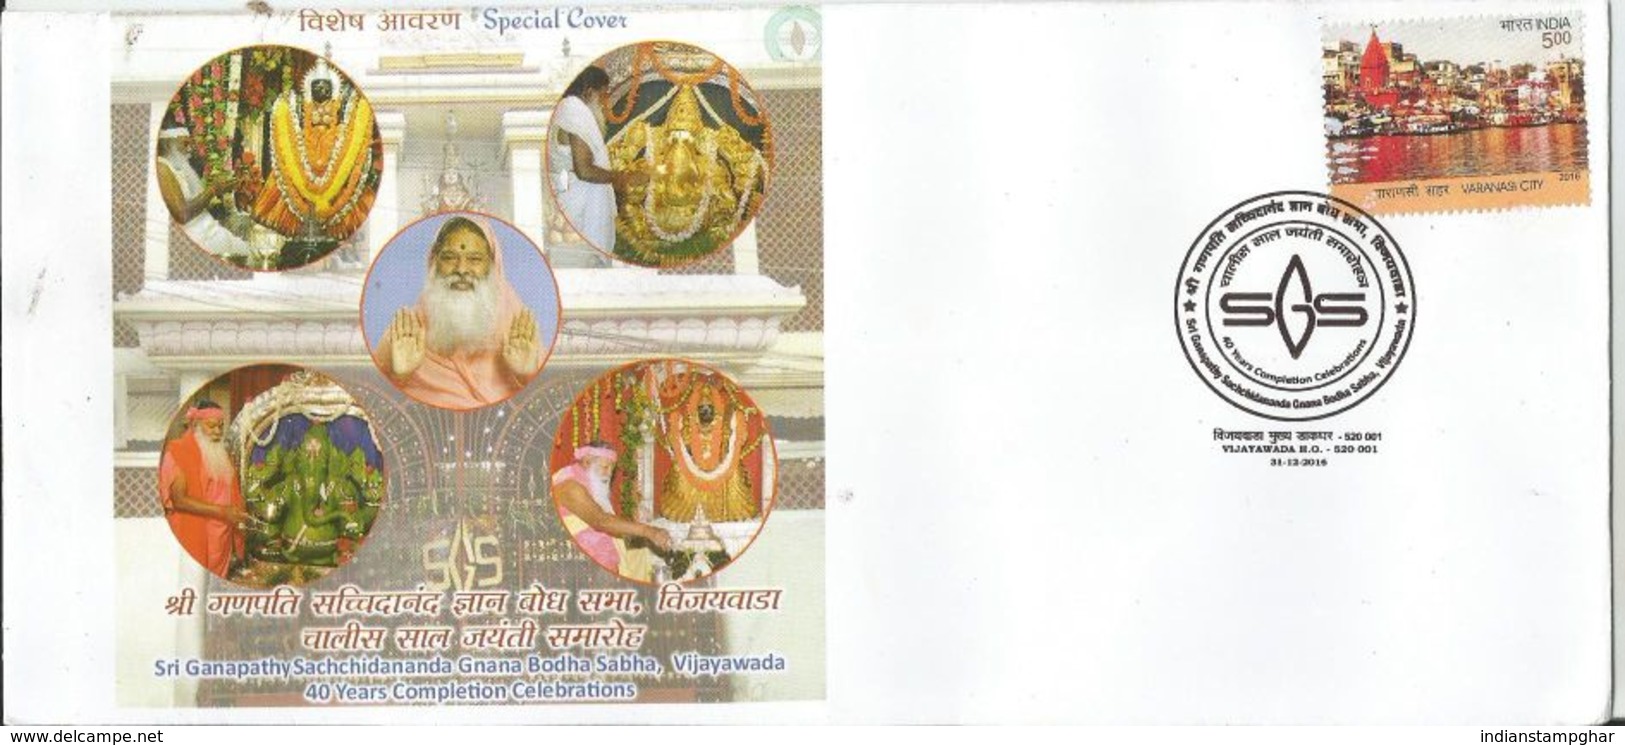 2016 Special Cover Sri Ganapathy Sachchidananda Gnana Bodha Sabha, Vijayawada, By India Post, As Per Scan - Hinduism